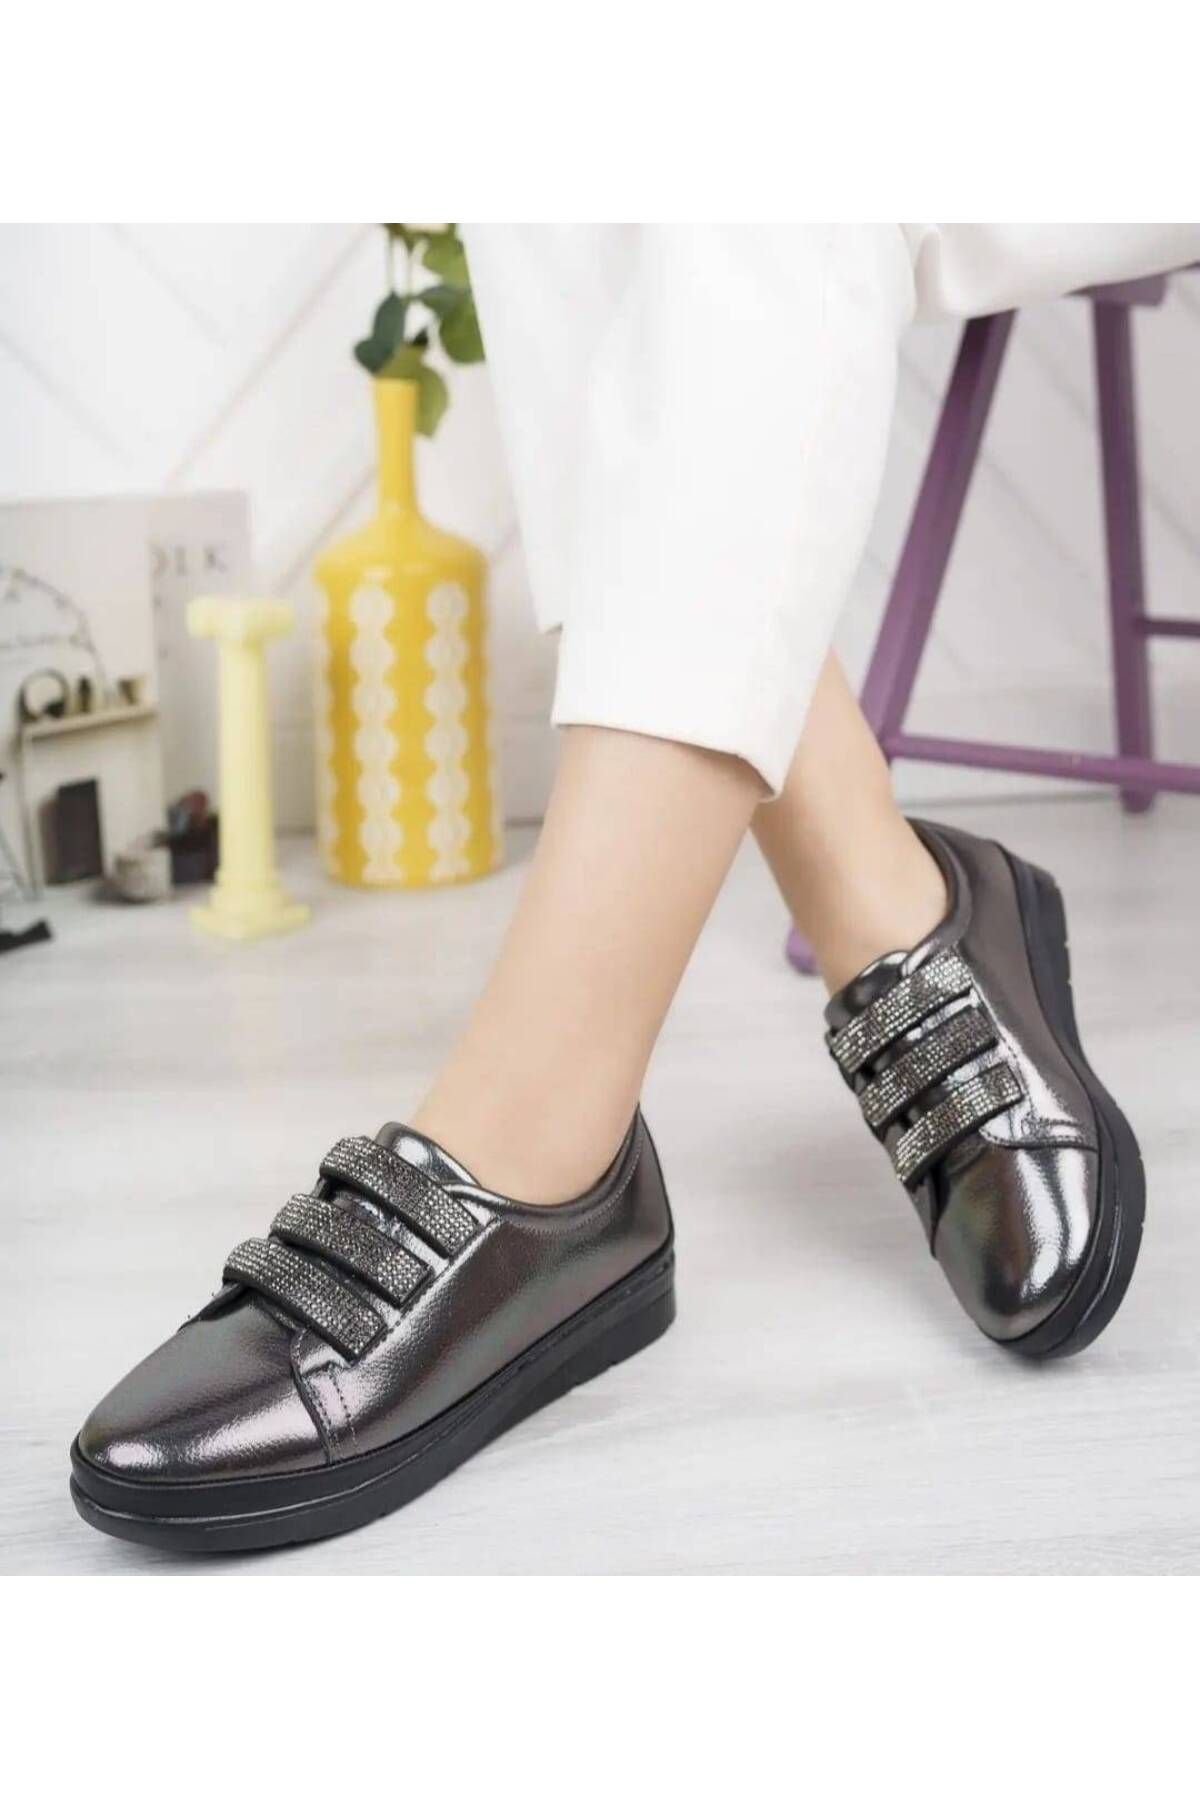 ayakkabıhavuzu Kadın Platin Streç Taşlı Ortapedik Casual Ayakkabı